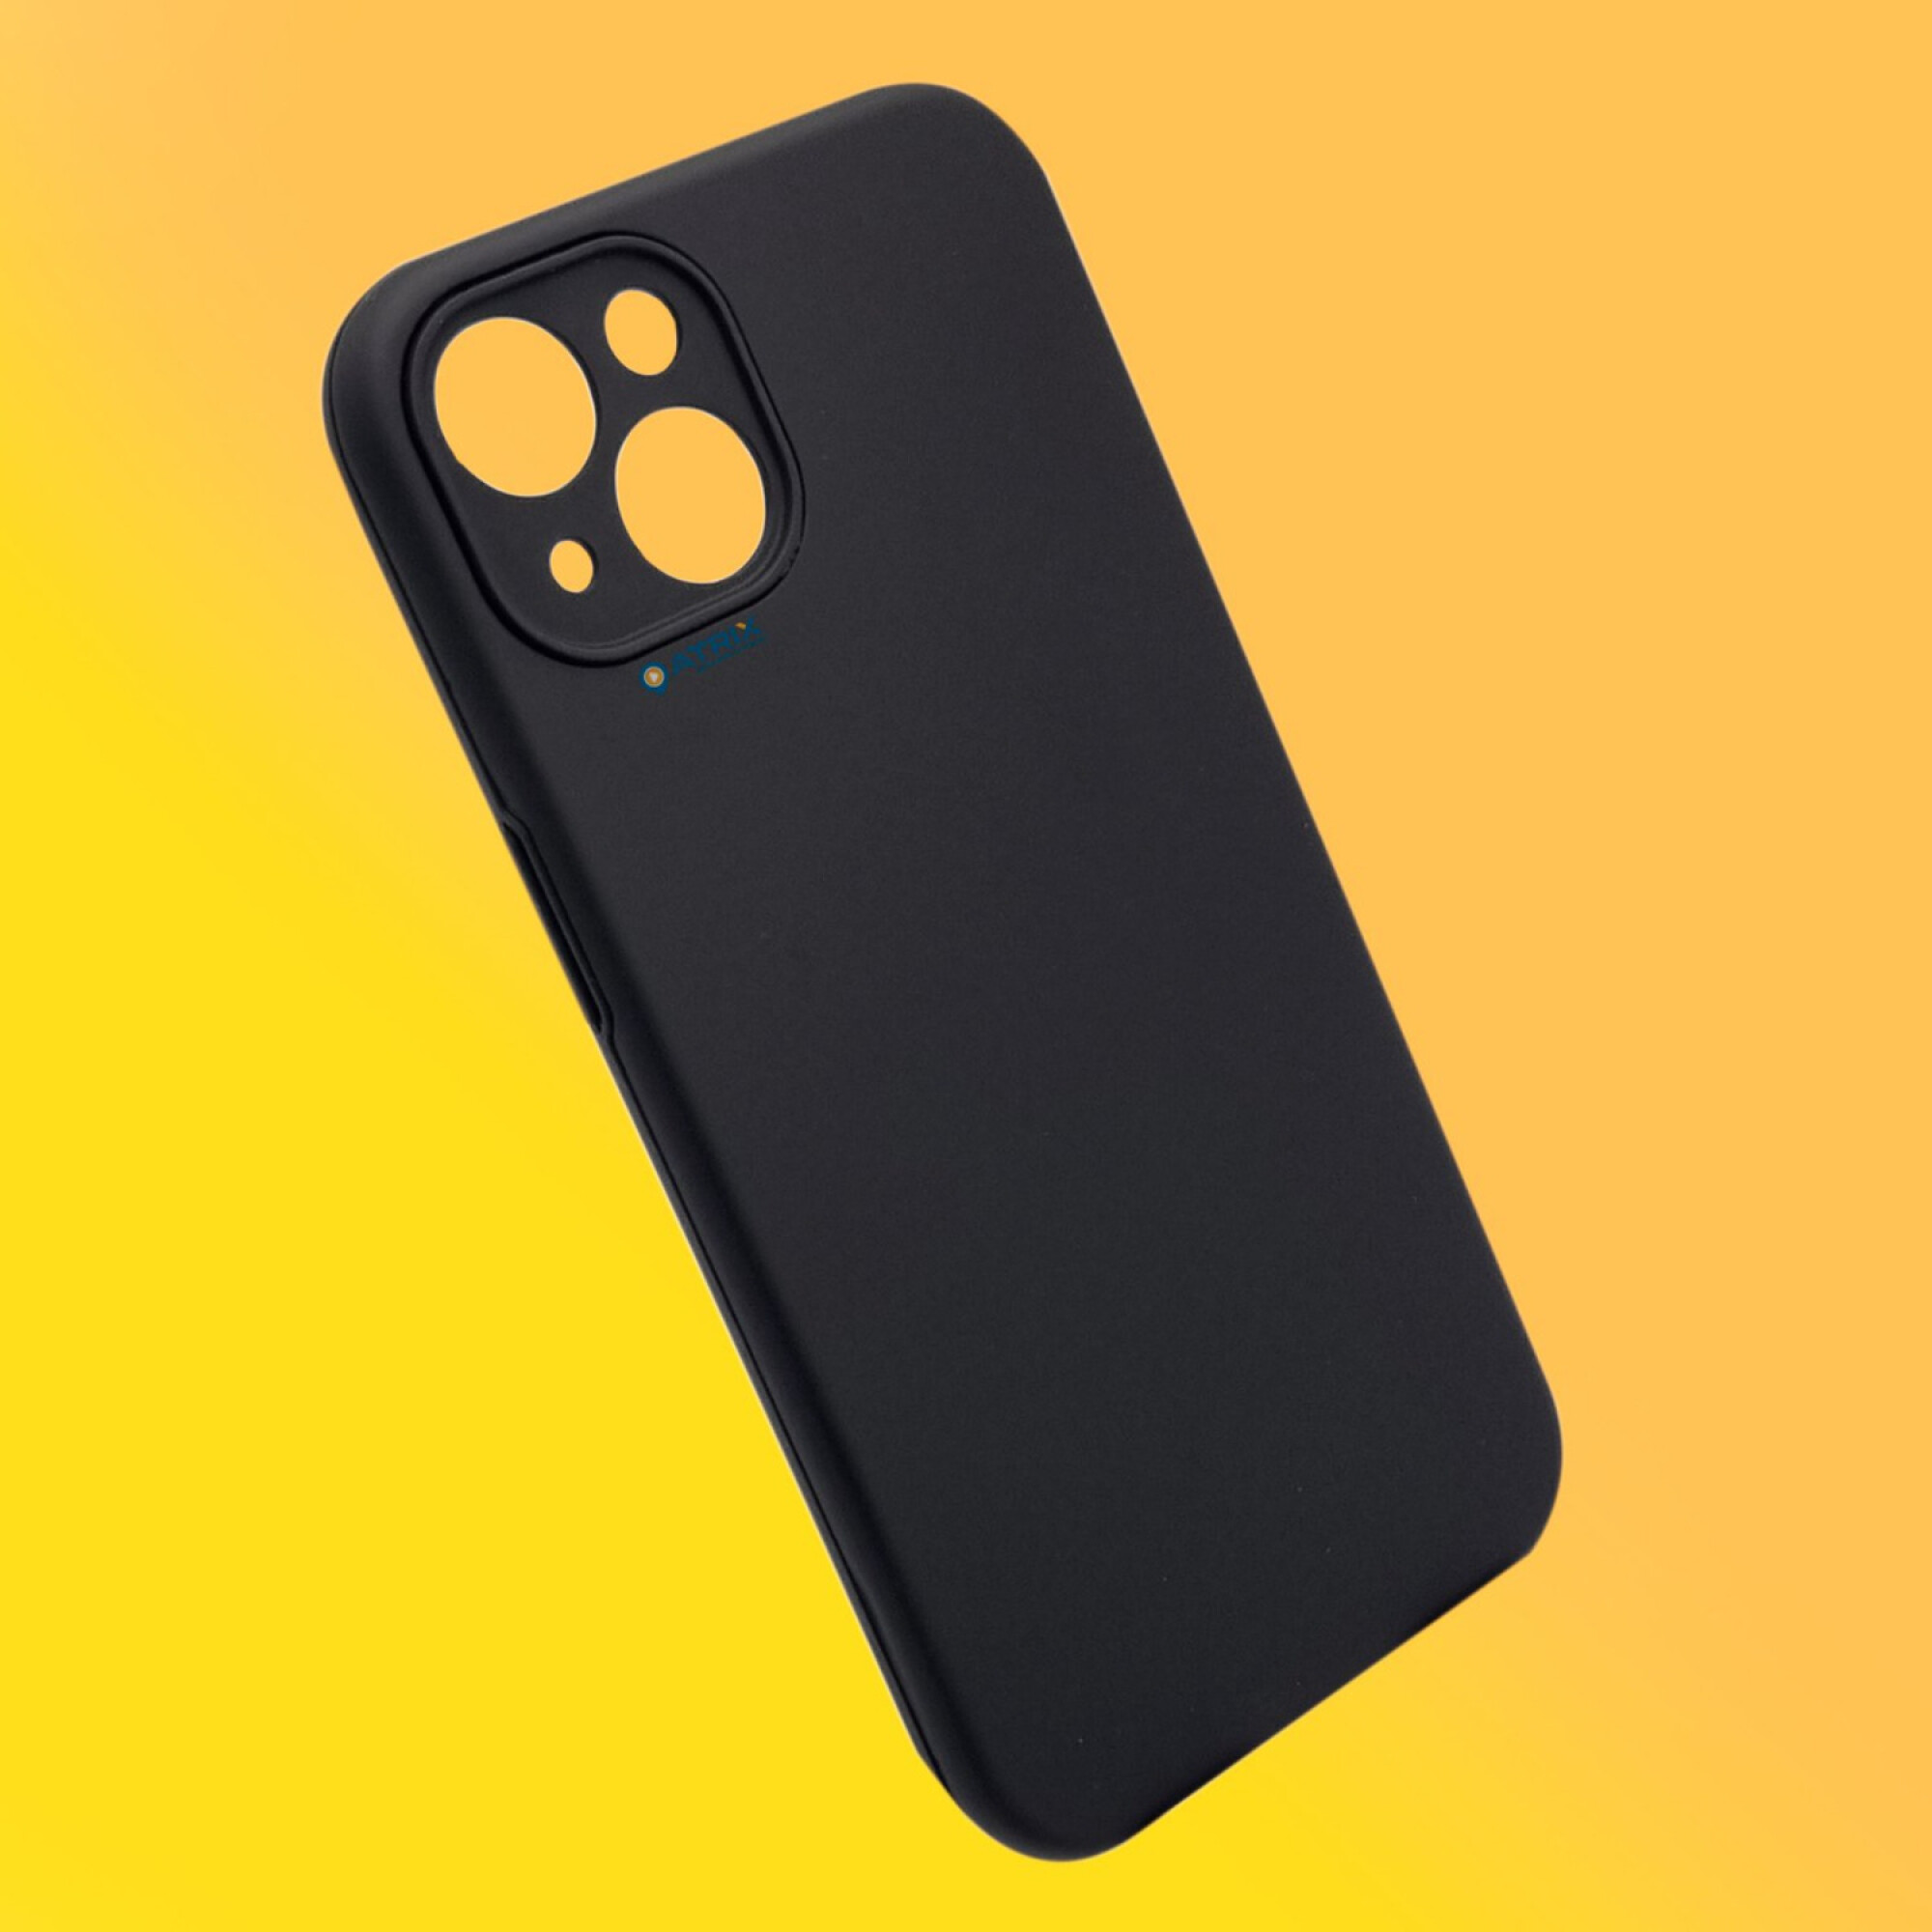 Coverzs Coverzs Funda silicona con cuerda iPhone 13 Pro (amarillo)